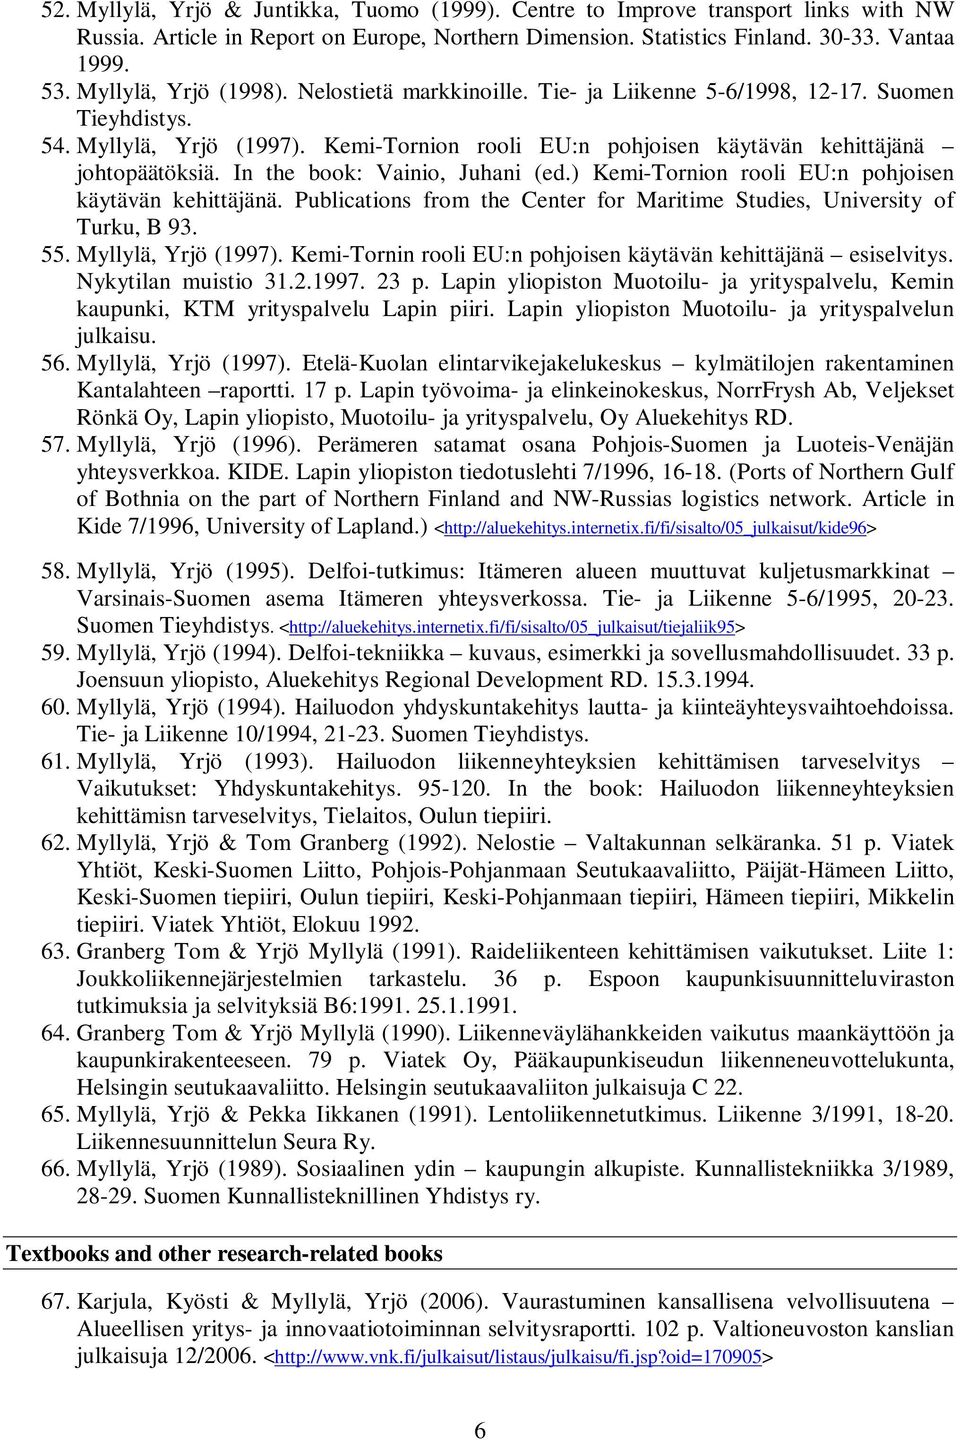 In the book: Vainio, Juhani (ed.) Kemi-Tornion rooli EU:n pohjoisen käytävän kehittäjänä. Publications from the Center for Maritime Studies, University of Turku, B 93. 55. Myllylä, Yrjö (1997).